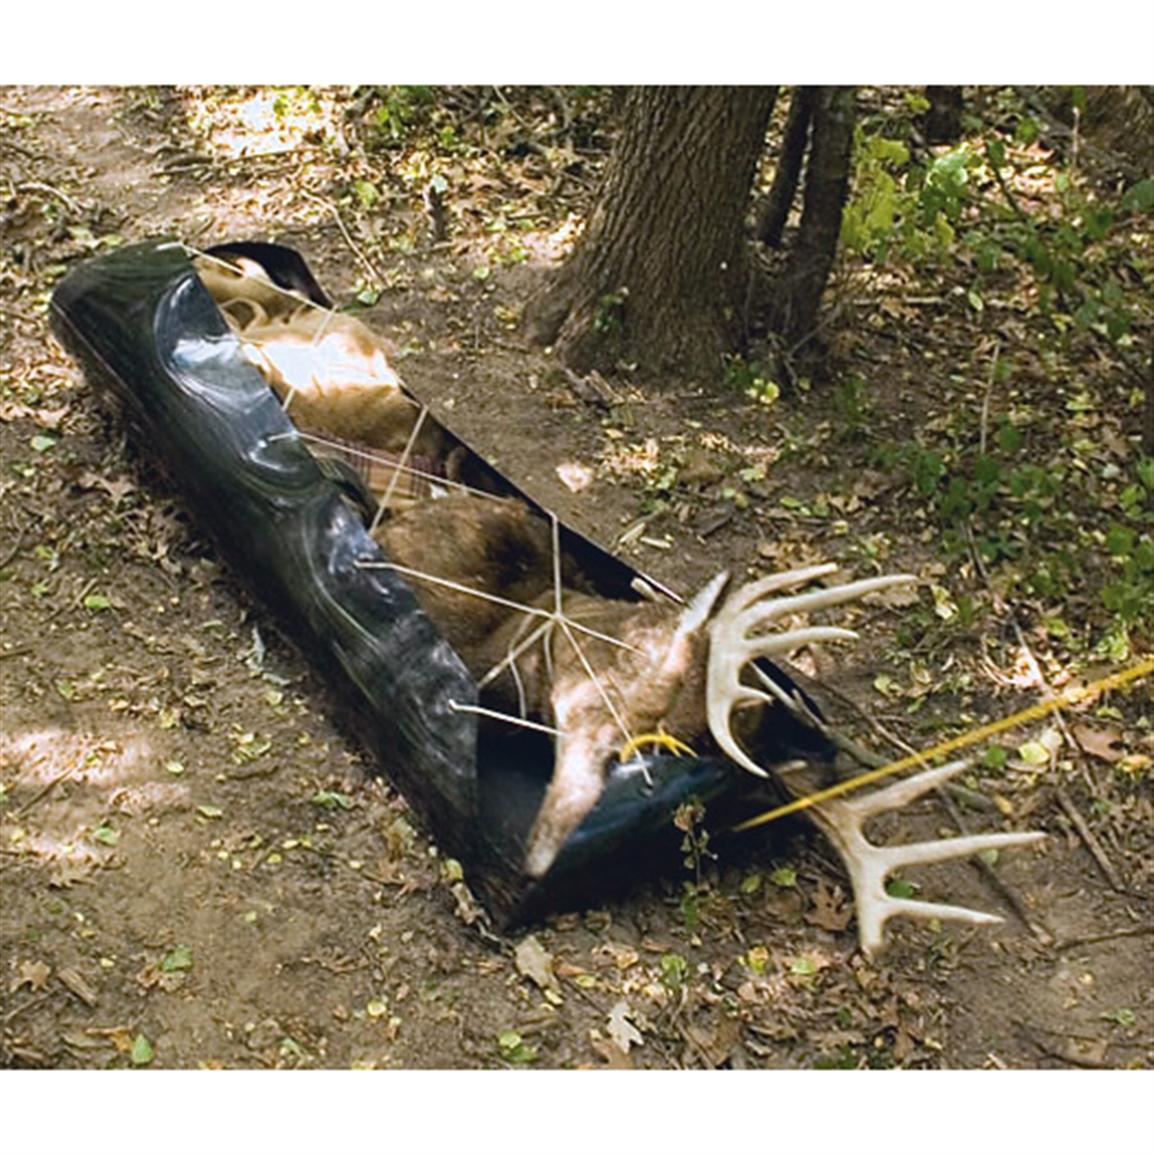 deer drag sled